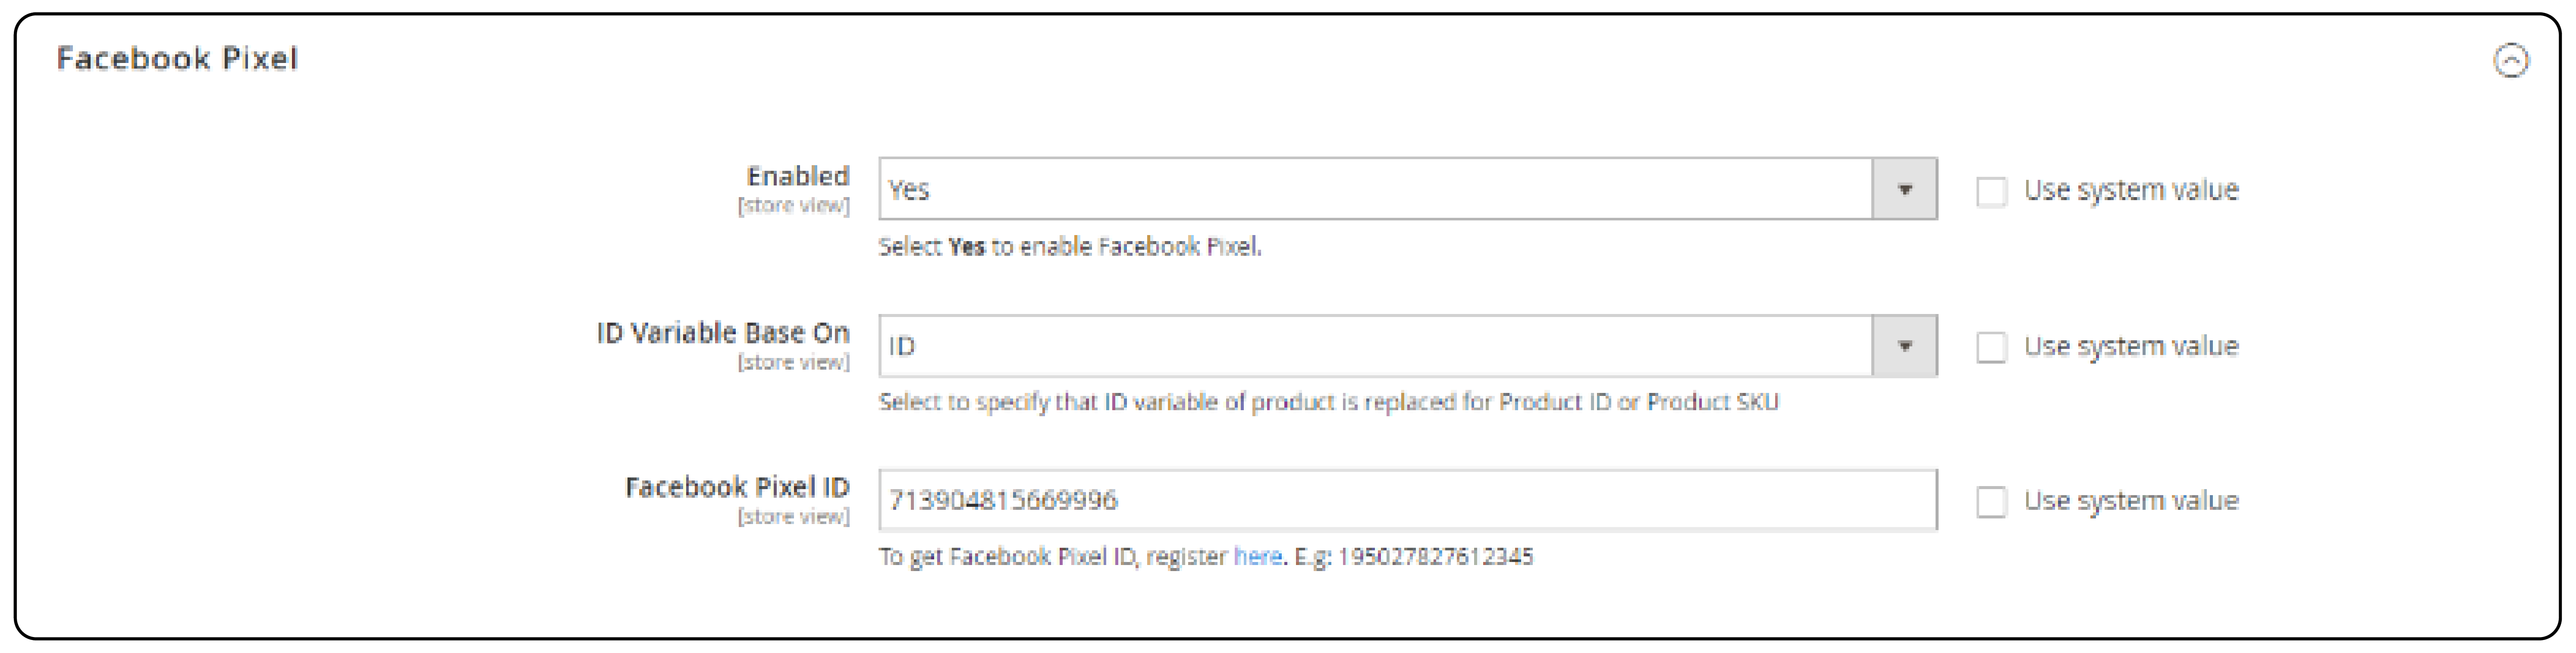 Magento 2 Facebook Pixel ID Entry